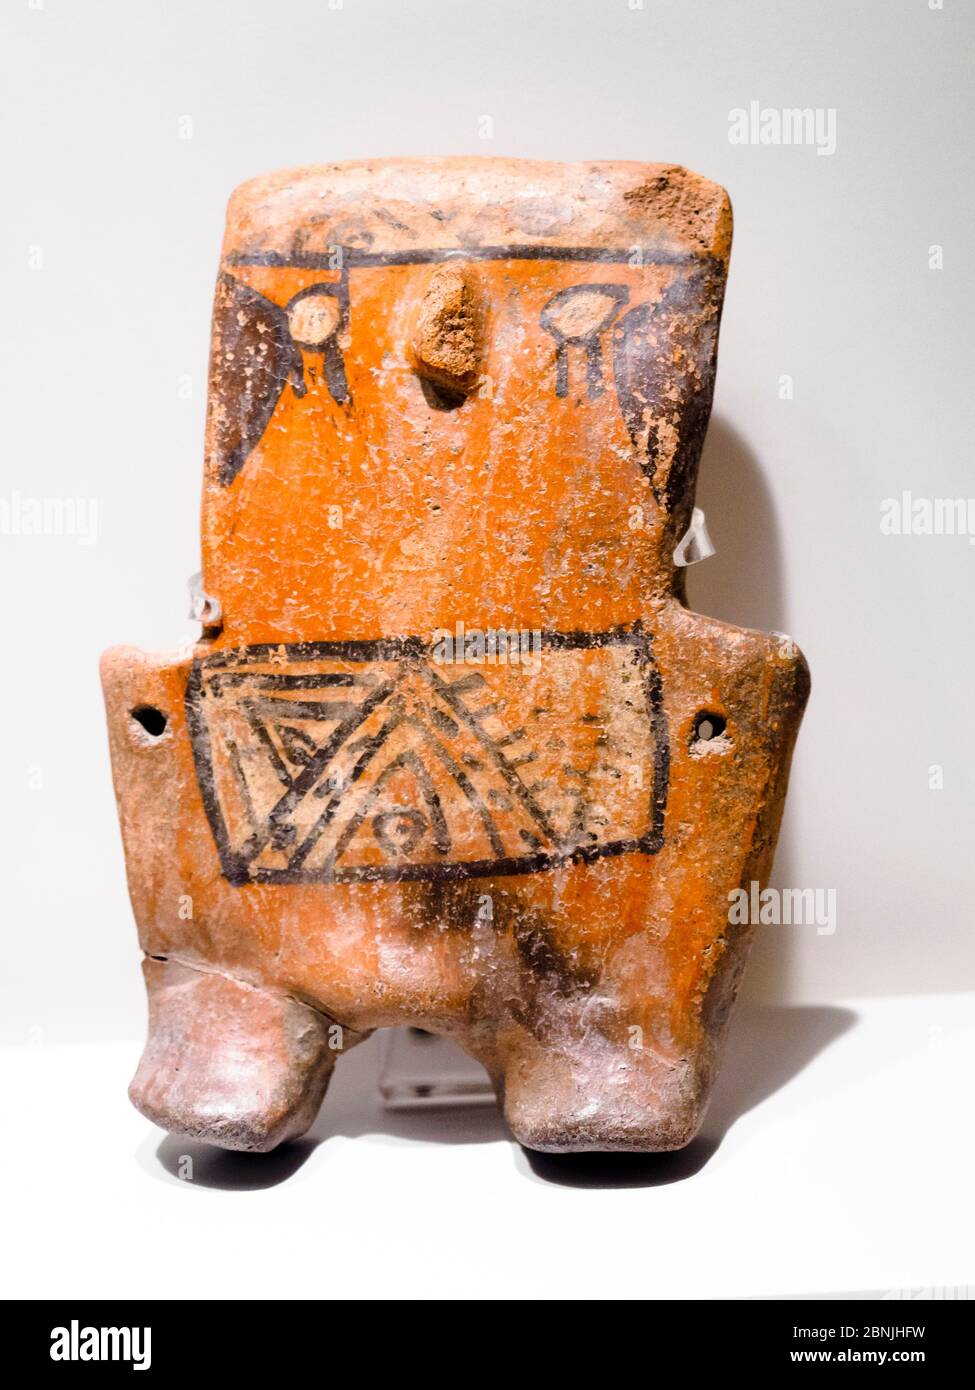 Geformten Gefäß Huari Übergangszeit 800 n. Chr. - 1300 n. Chr. Museo de Arte Precolombino, Cusco - Peru In der präkolumbianischen Zeiten war die Darstellung der weiblichen Figur grundlegend assoziiert mit Fruchtbarkeit und in diese Figur ein Gefühl von verspielten sogar scheint anwesend zu sein. Obwohl es offensichtlich ist, dass die ästhetische Muster geändert wurden, ist die primitive Schönheit, die jedes Stück enthält nicht zu leugnen. Verwendung vor allem Huari Elemente wie lineare Design, Farbpalette und den Wunsch ikonographischen Details, in denen die geformte Arbeit scheinen haben würde diese Figur betonen Stockfoto